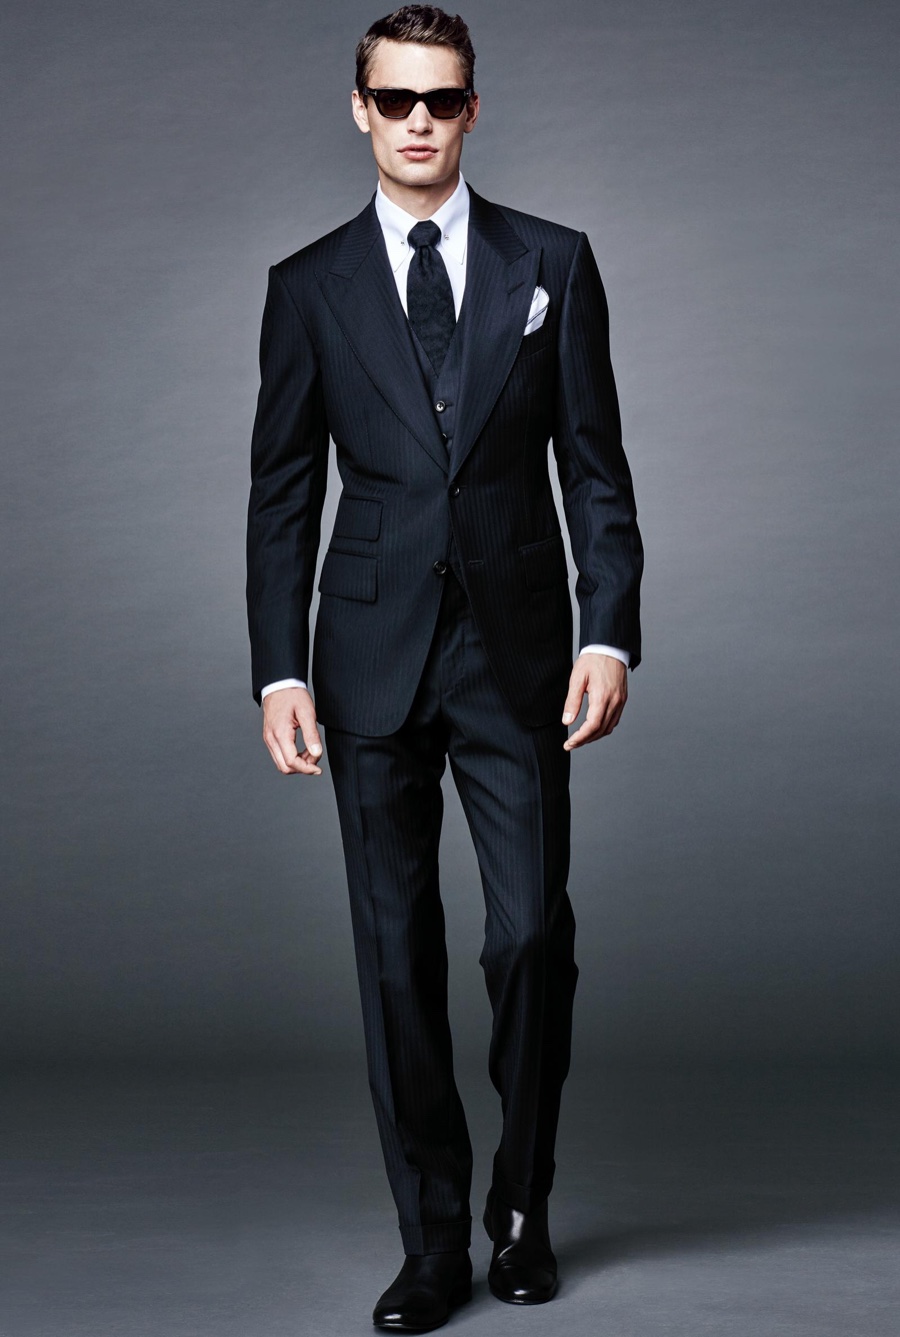 [다니엘 크레이그] 007 스펙터에서 입은 톰포드 패션 : 네이버 블로그